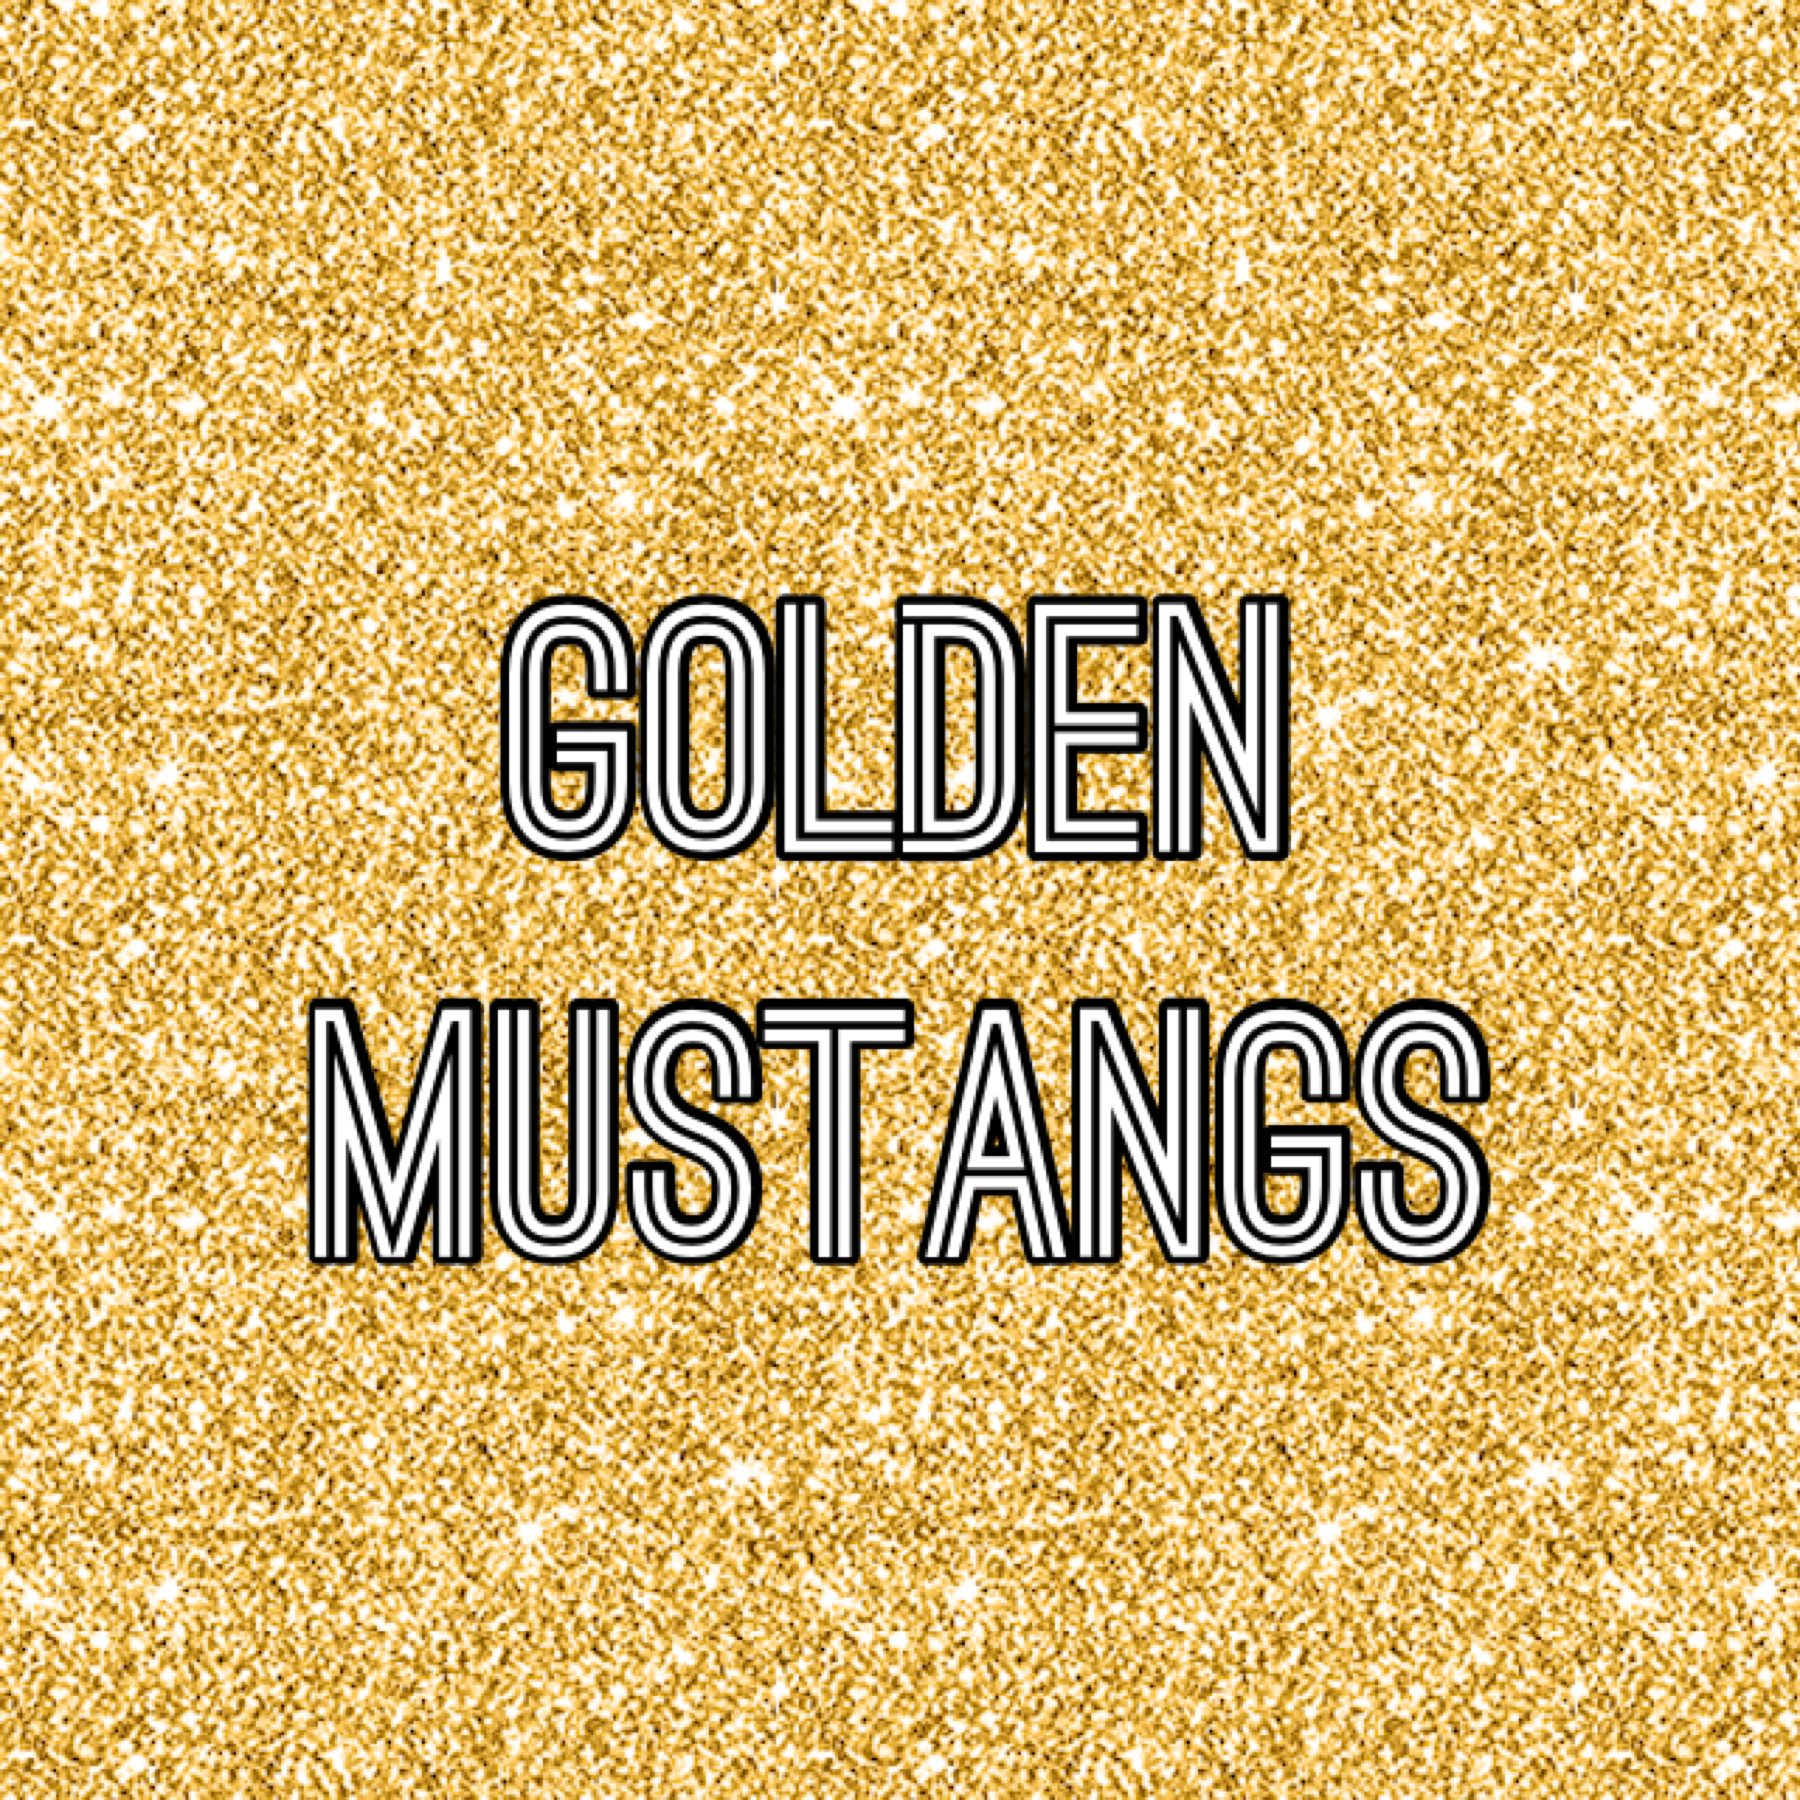 golden mustangs